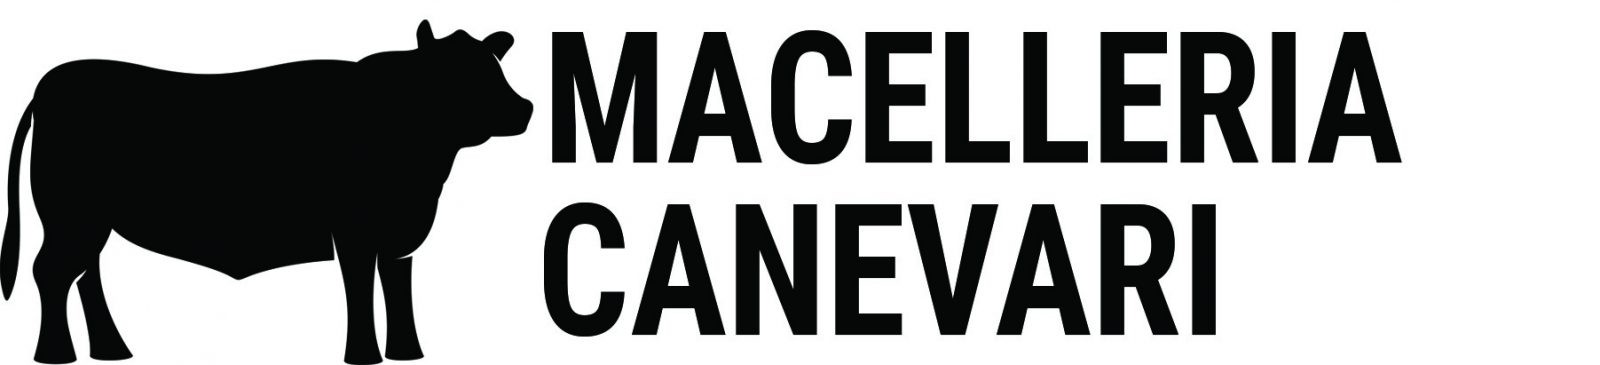 Macelleria Canevari